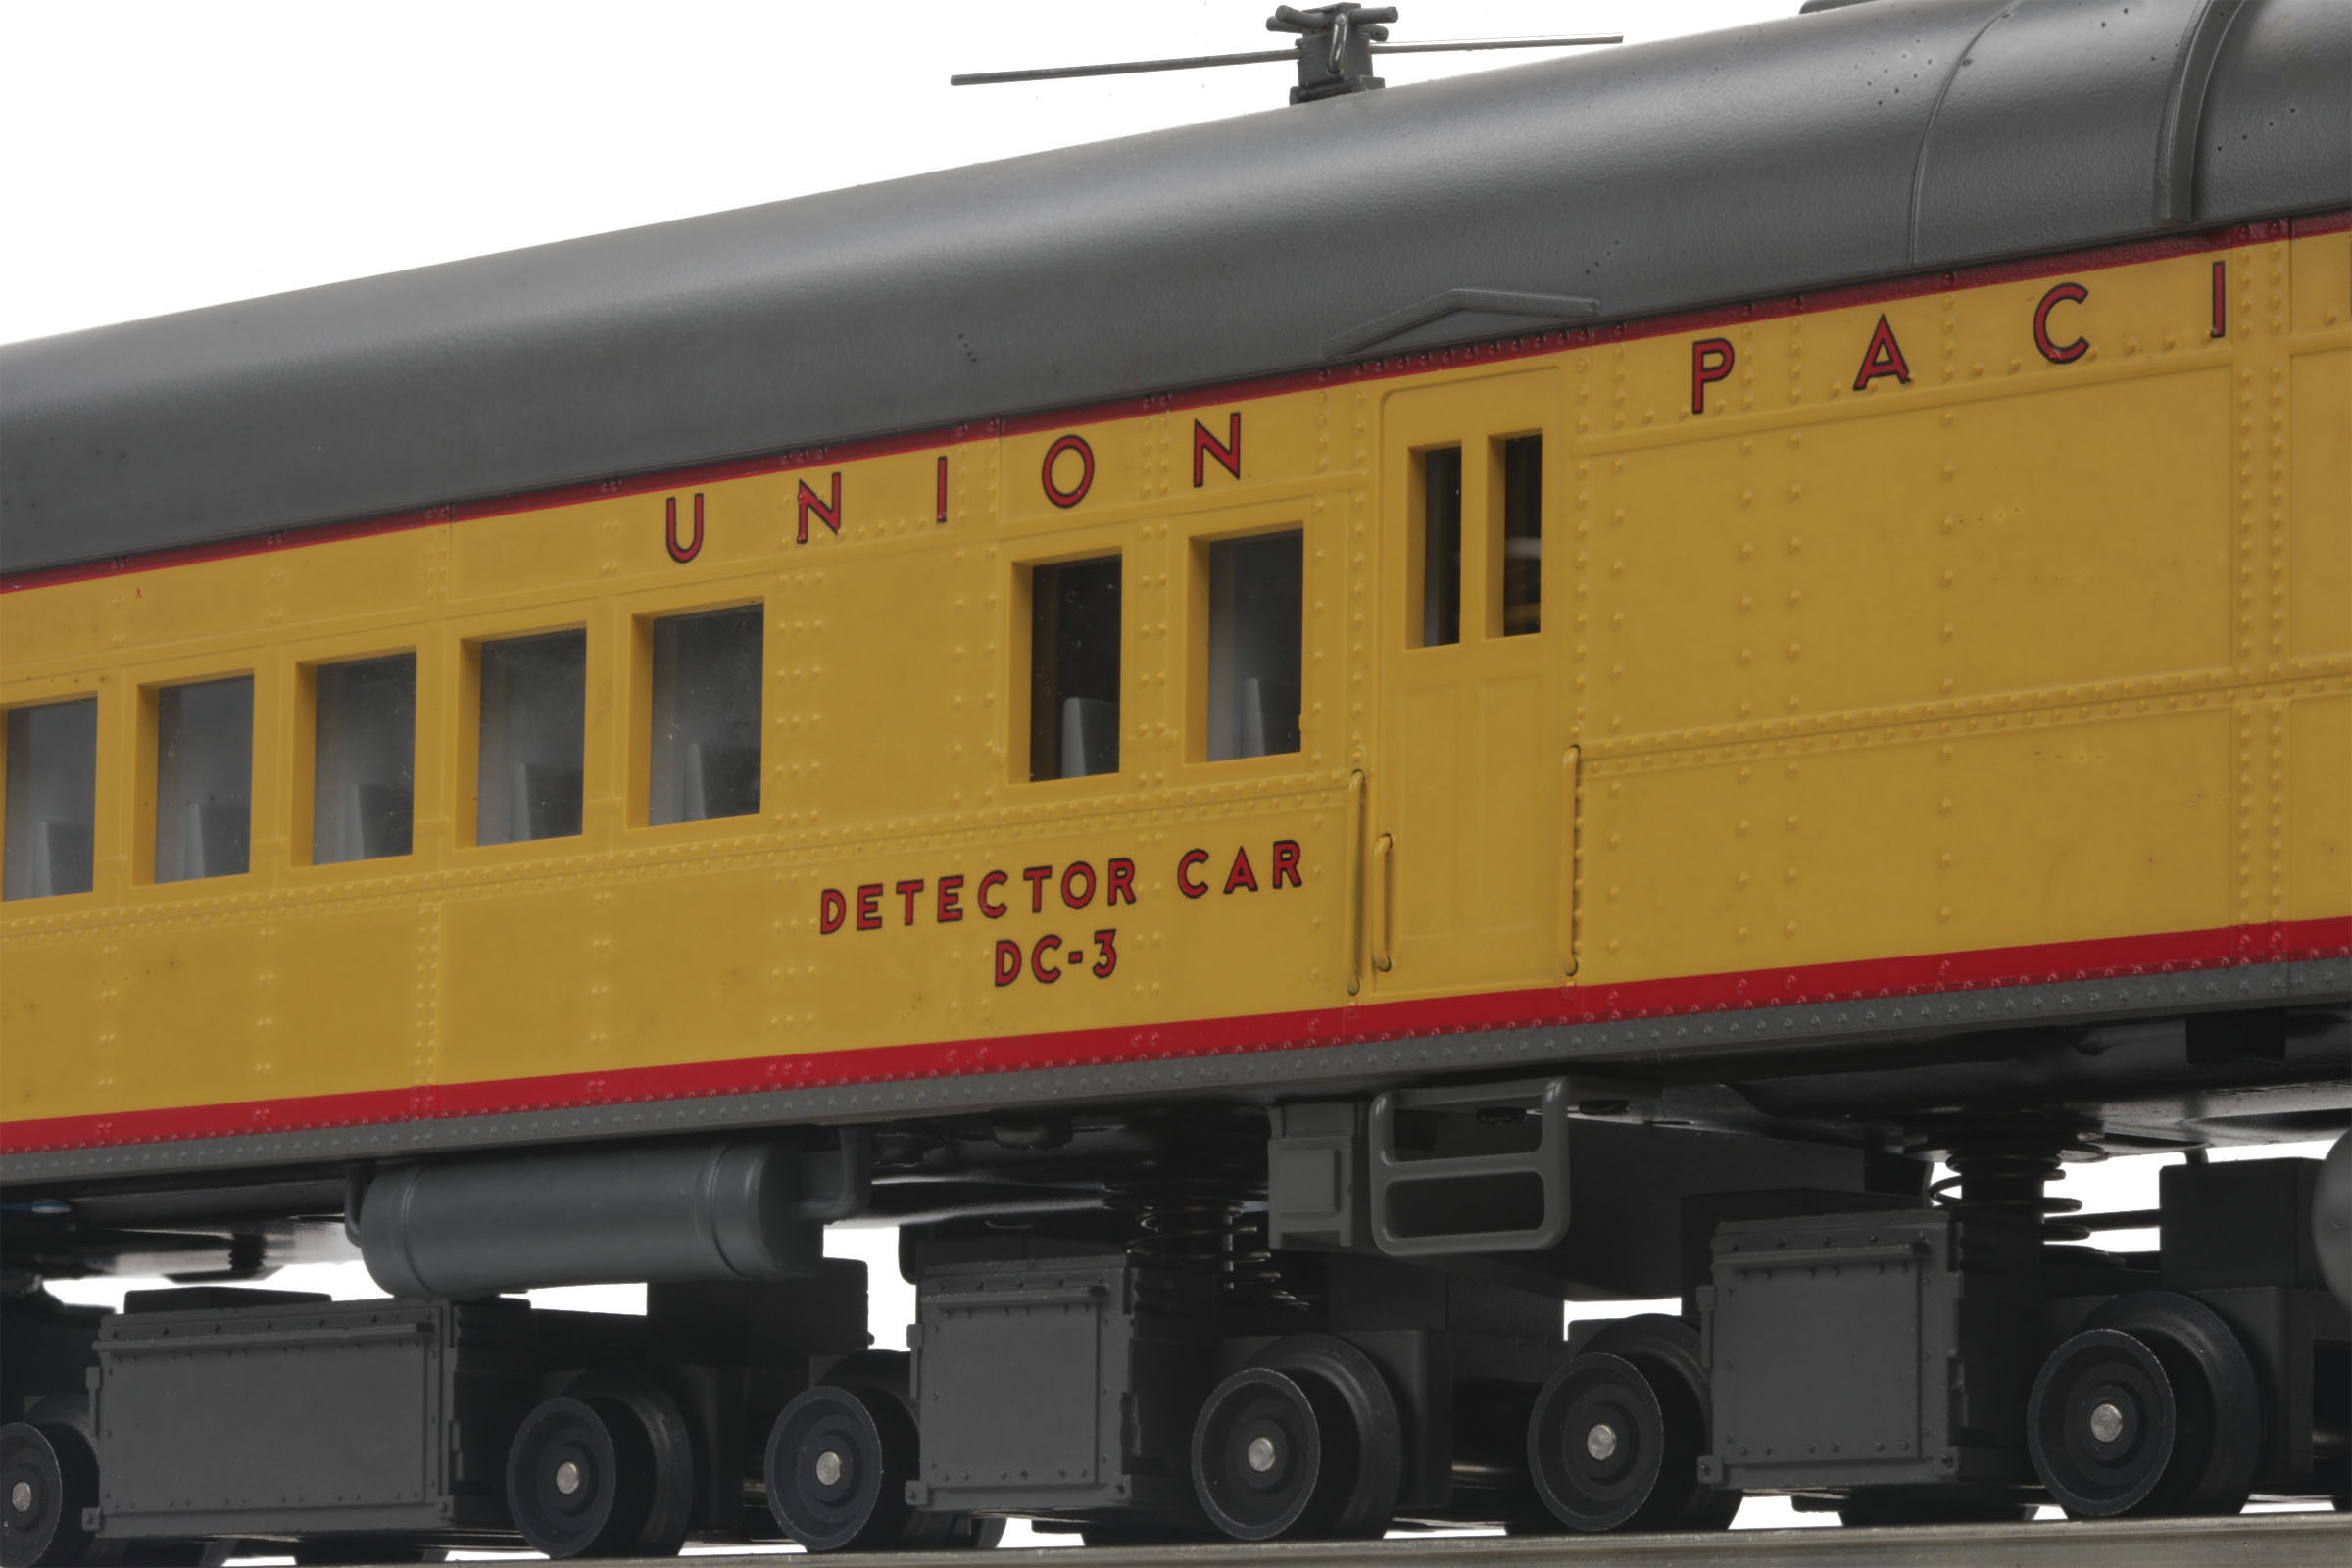 Union Pacific DC-3 Rail Inspection Car image